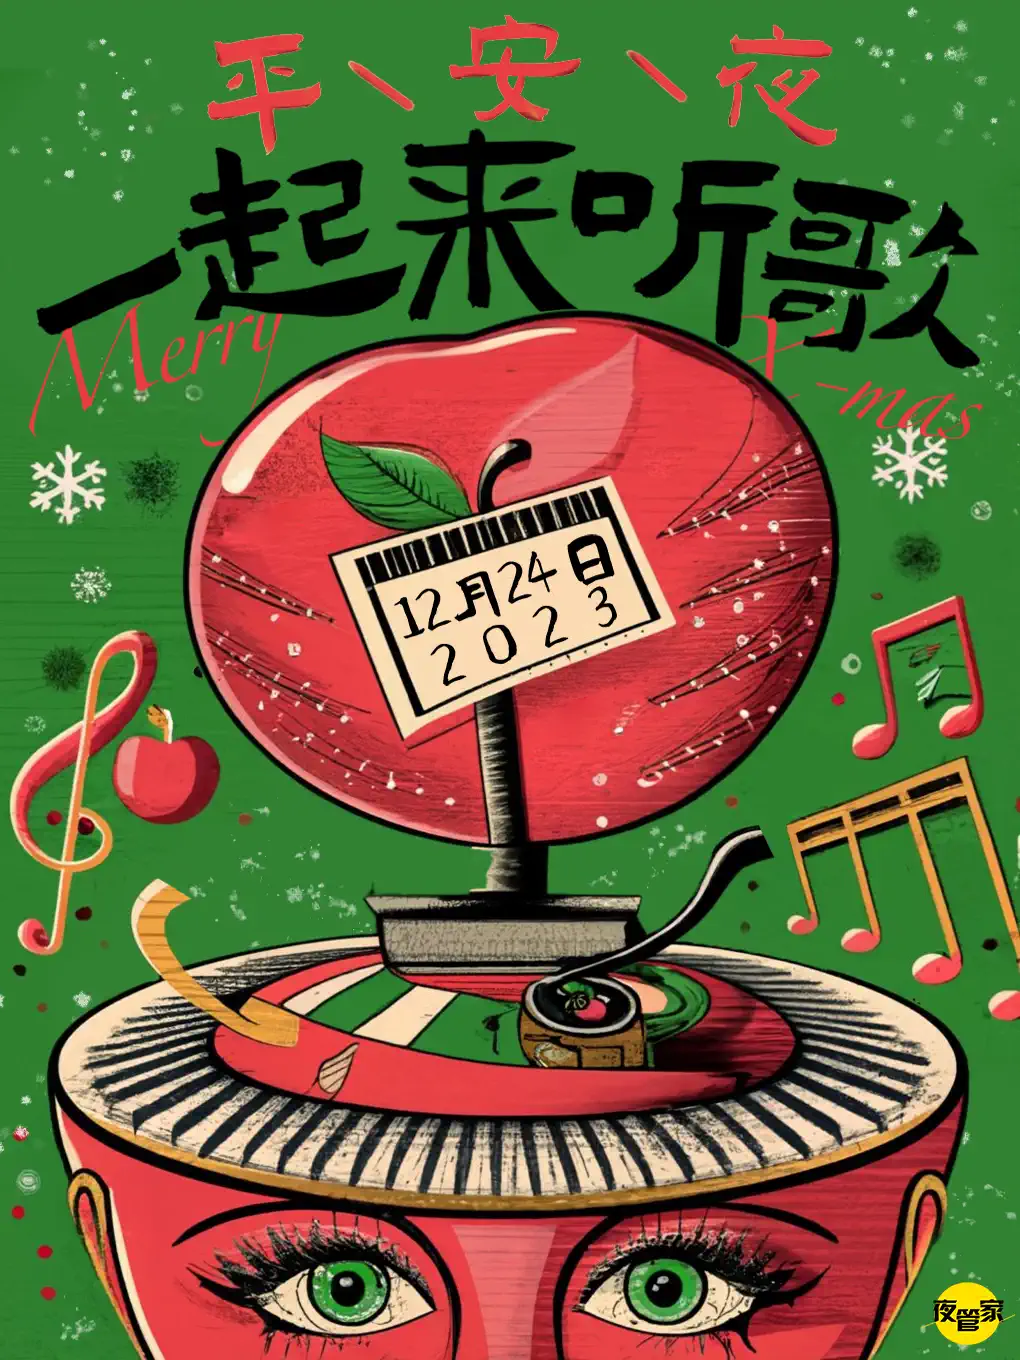 【天津】 平安夜一起来听歌——与crush一起燃燥圣诞！钟声响起音乐狂欢！「夜管家呈现」